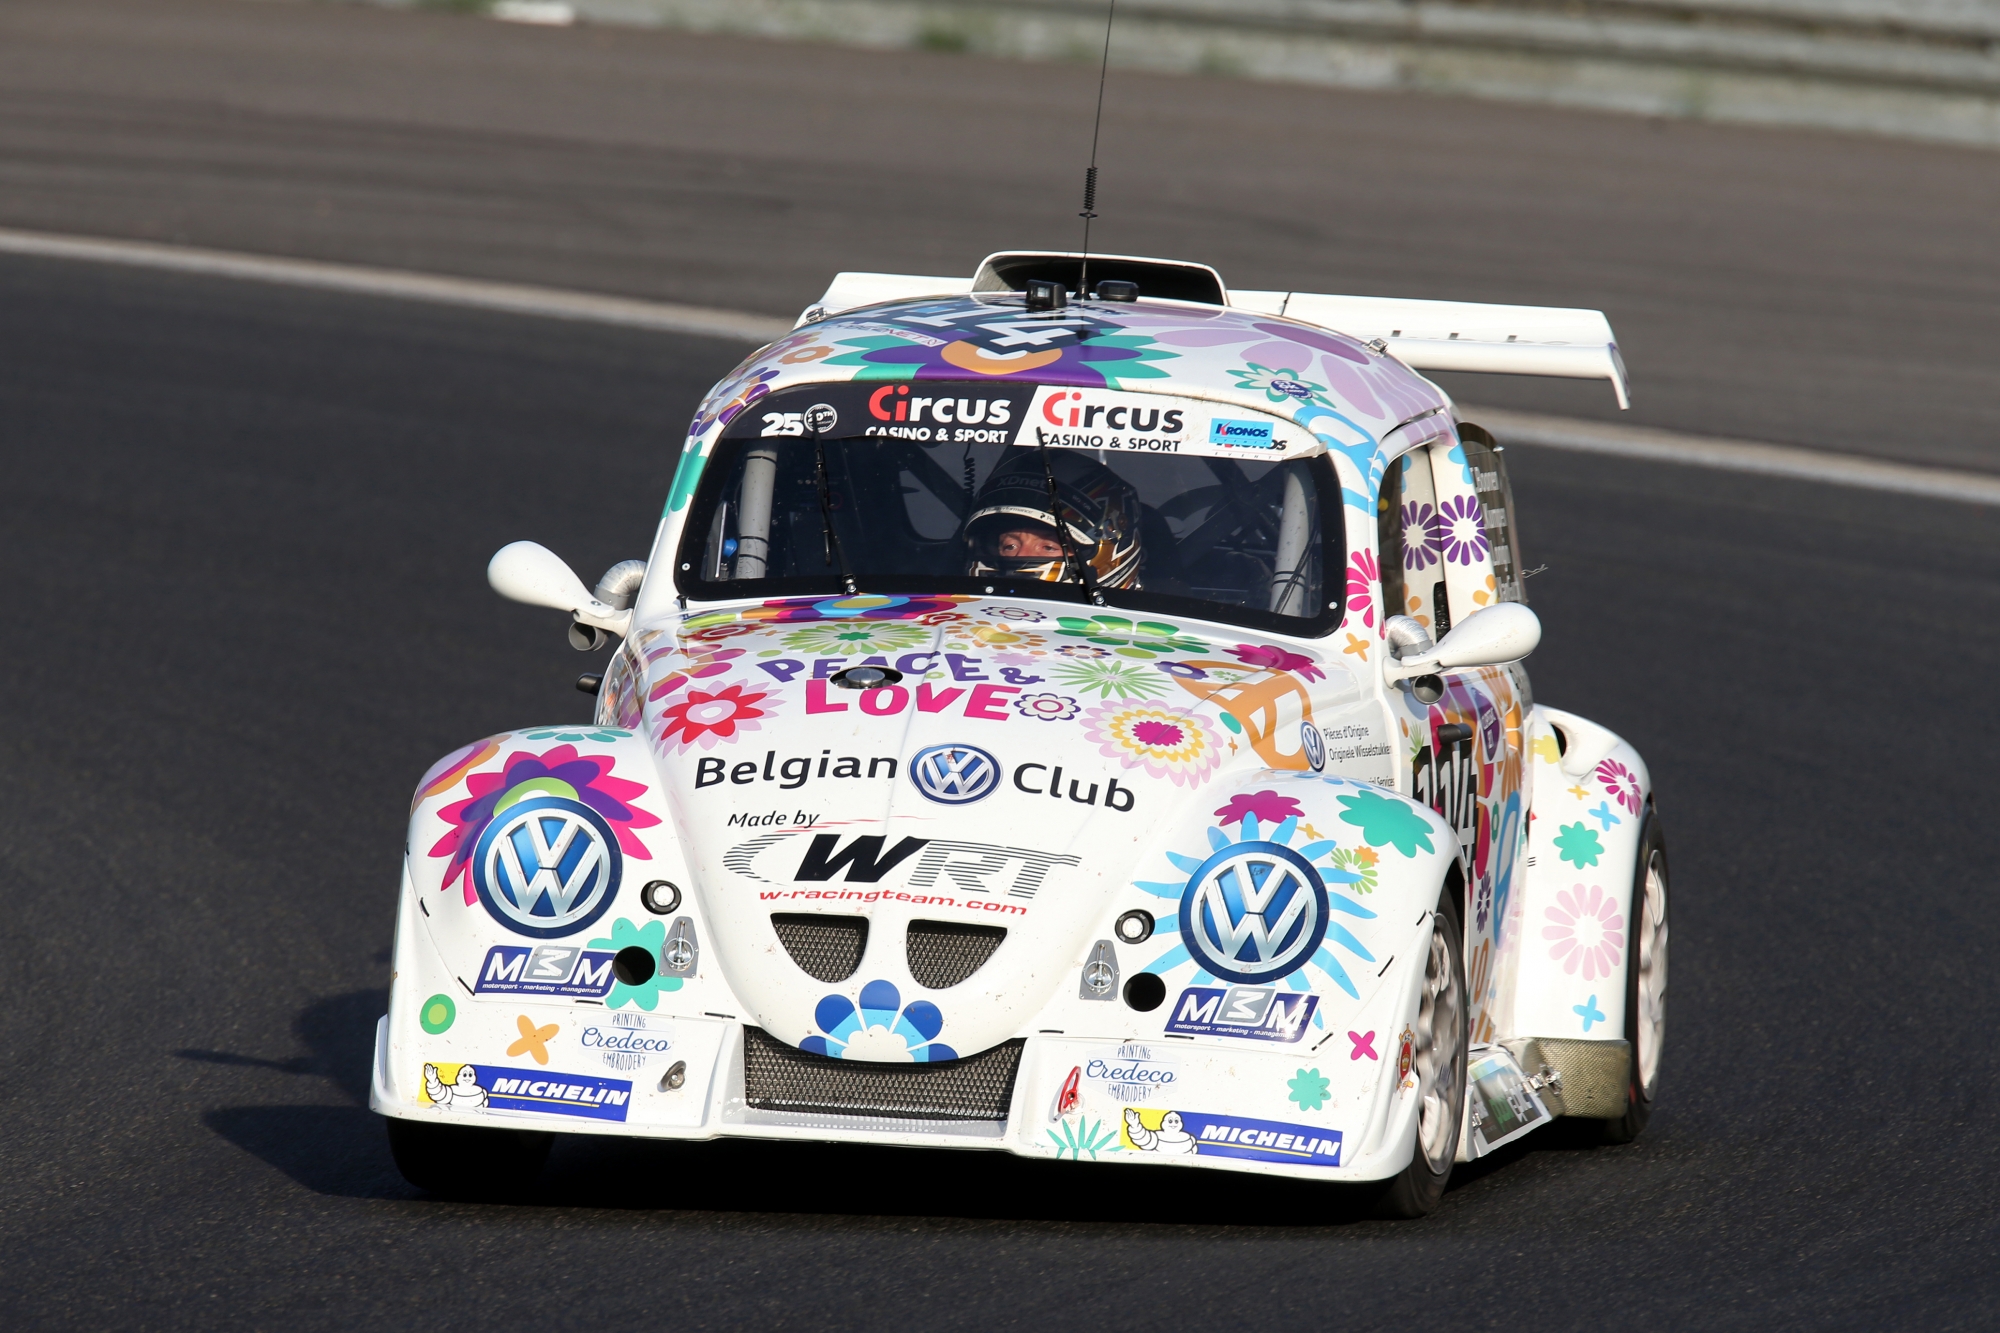 image 2 - Venez découvrir la VW Fun Cup le 11 octobre à Mettet !